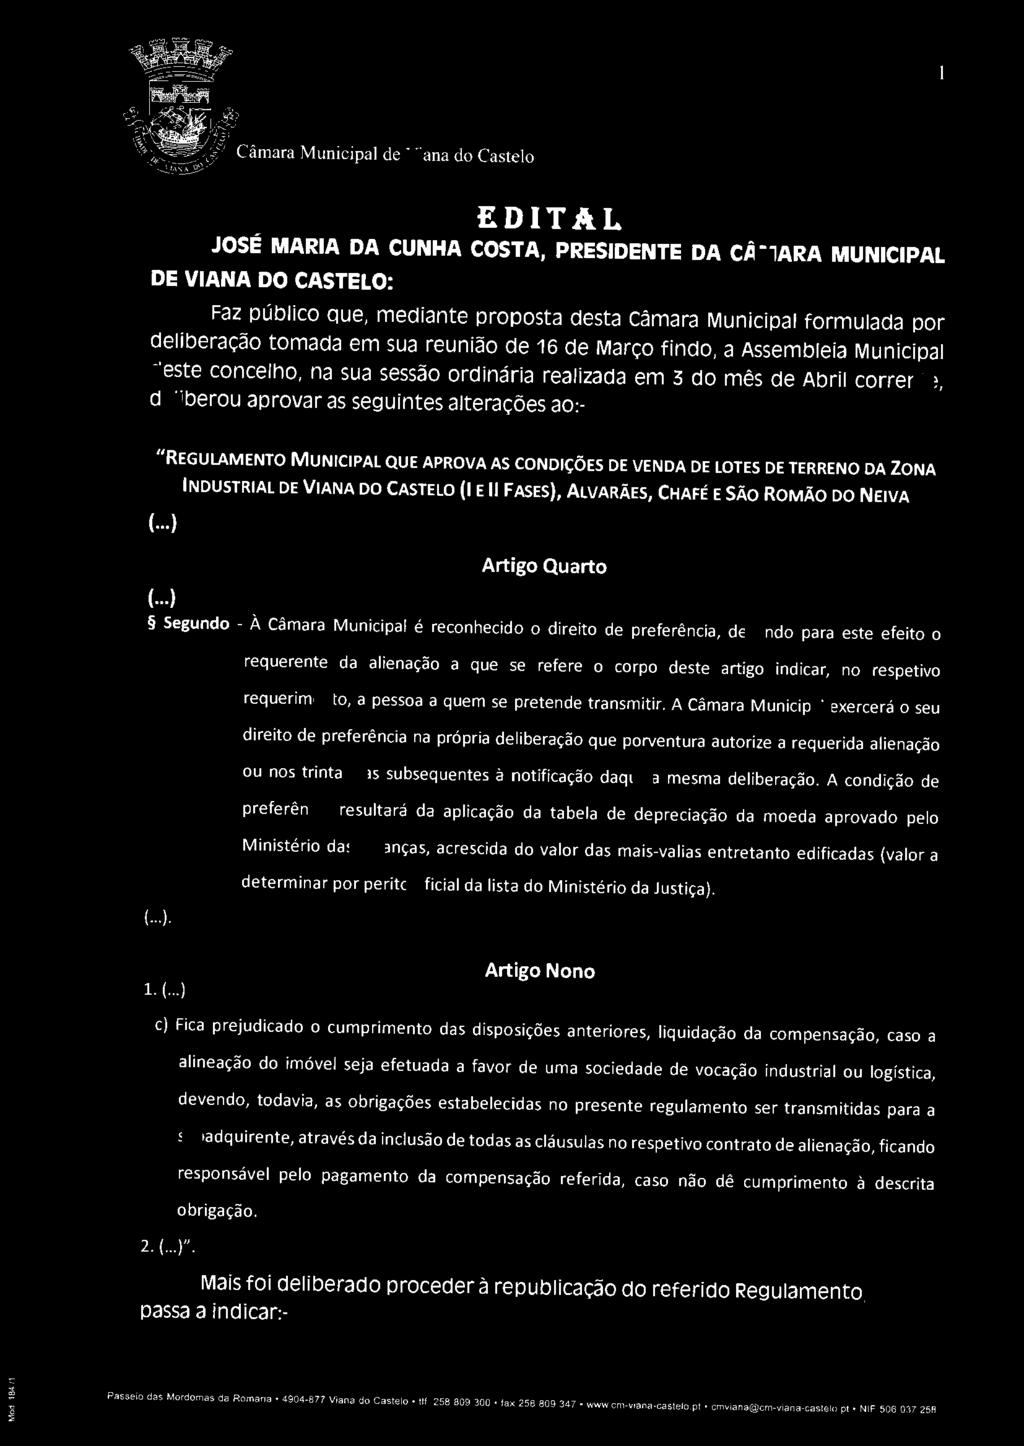 EDITAL JOSÉ MARIA DA CUNHA COSTA, PRESIDENTE DA CÂMARA MUNICIPAL DE VIANA DO CASTELO: Faz público que, mediante proposta desta câmara Municipal formulada por deliberação tomada em sua reunião de 16